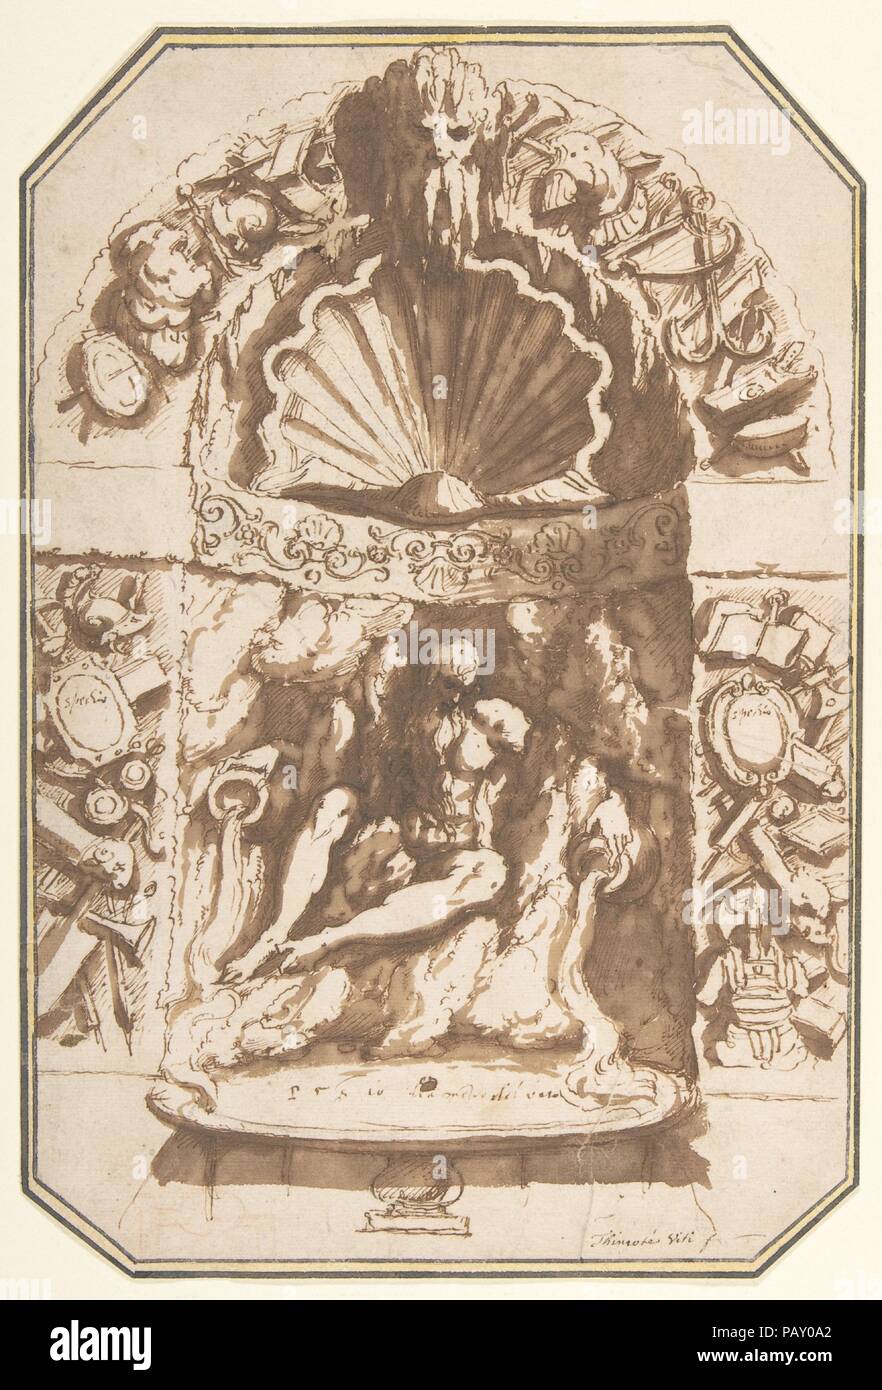 Ein Brunnen in einer Grotte. Artist: Giovanni Guerra (Italienisch, Modena 1544-1618 Rom). Abmessungen: Maximale, Ecken schneiden, achteckige Form: 10 3/4 x 7 1/4 in. (27,3 × 18,4 cm). Datum: Ca. 1598. Während des 16. Jahrhunderts, Italienische Adlige entwickelt eine Vorliebe für künstlichen Grotten in ihren Gärten und manchmal sogar in ihren Häusern. Künstler wie Giambologna und Bernardo Buontalenti wurde sehr geschickt im Erfinden von Landschaften von Steinen und Muscheln oft von Amphibien, Wirbellosen und anderen Tieren bewohnt. Die Aquatic Nature der meisten dieser Grotten fastenzeit sich auch gut auf die Einbeziehung der fountai Stockfoto